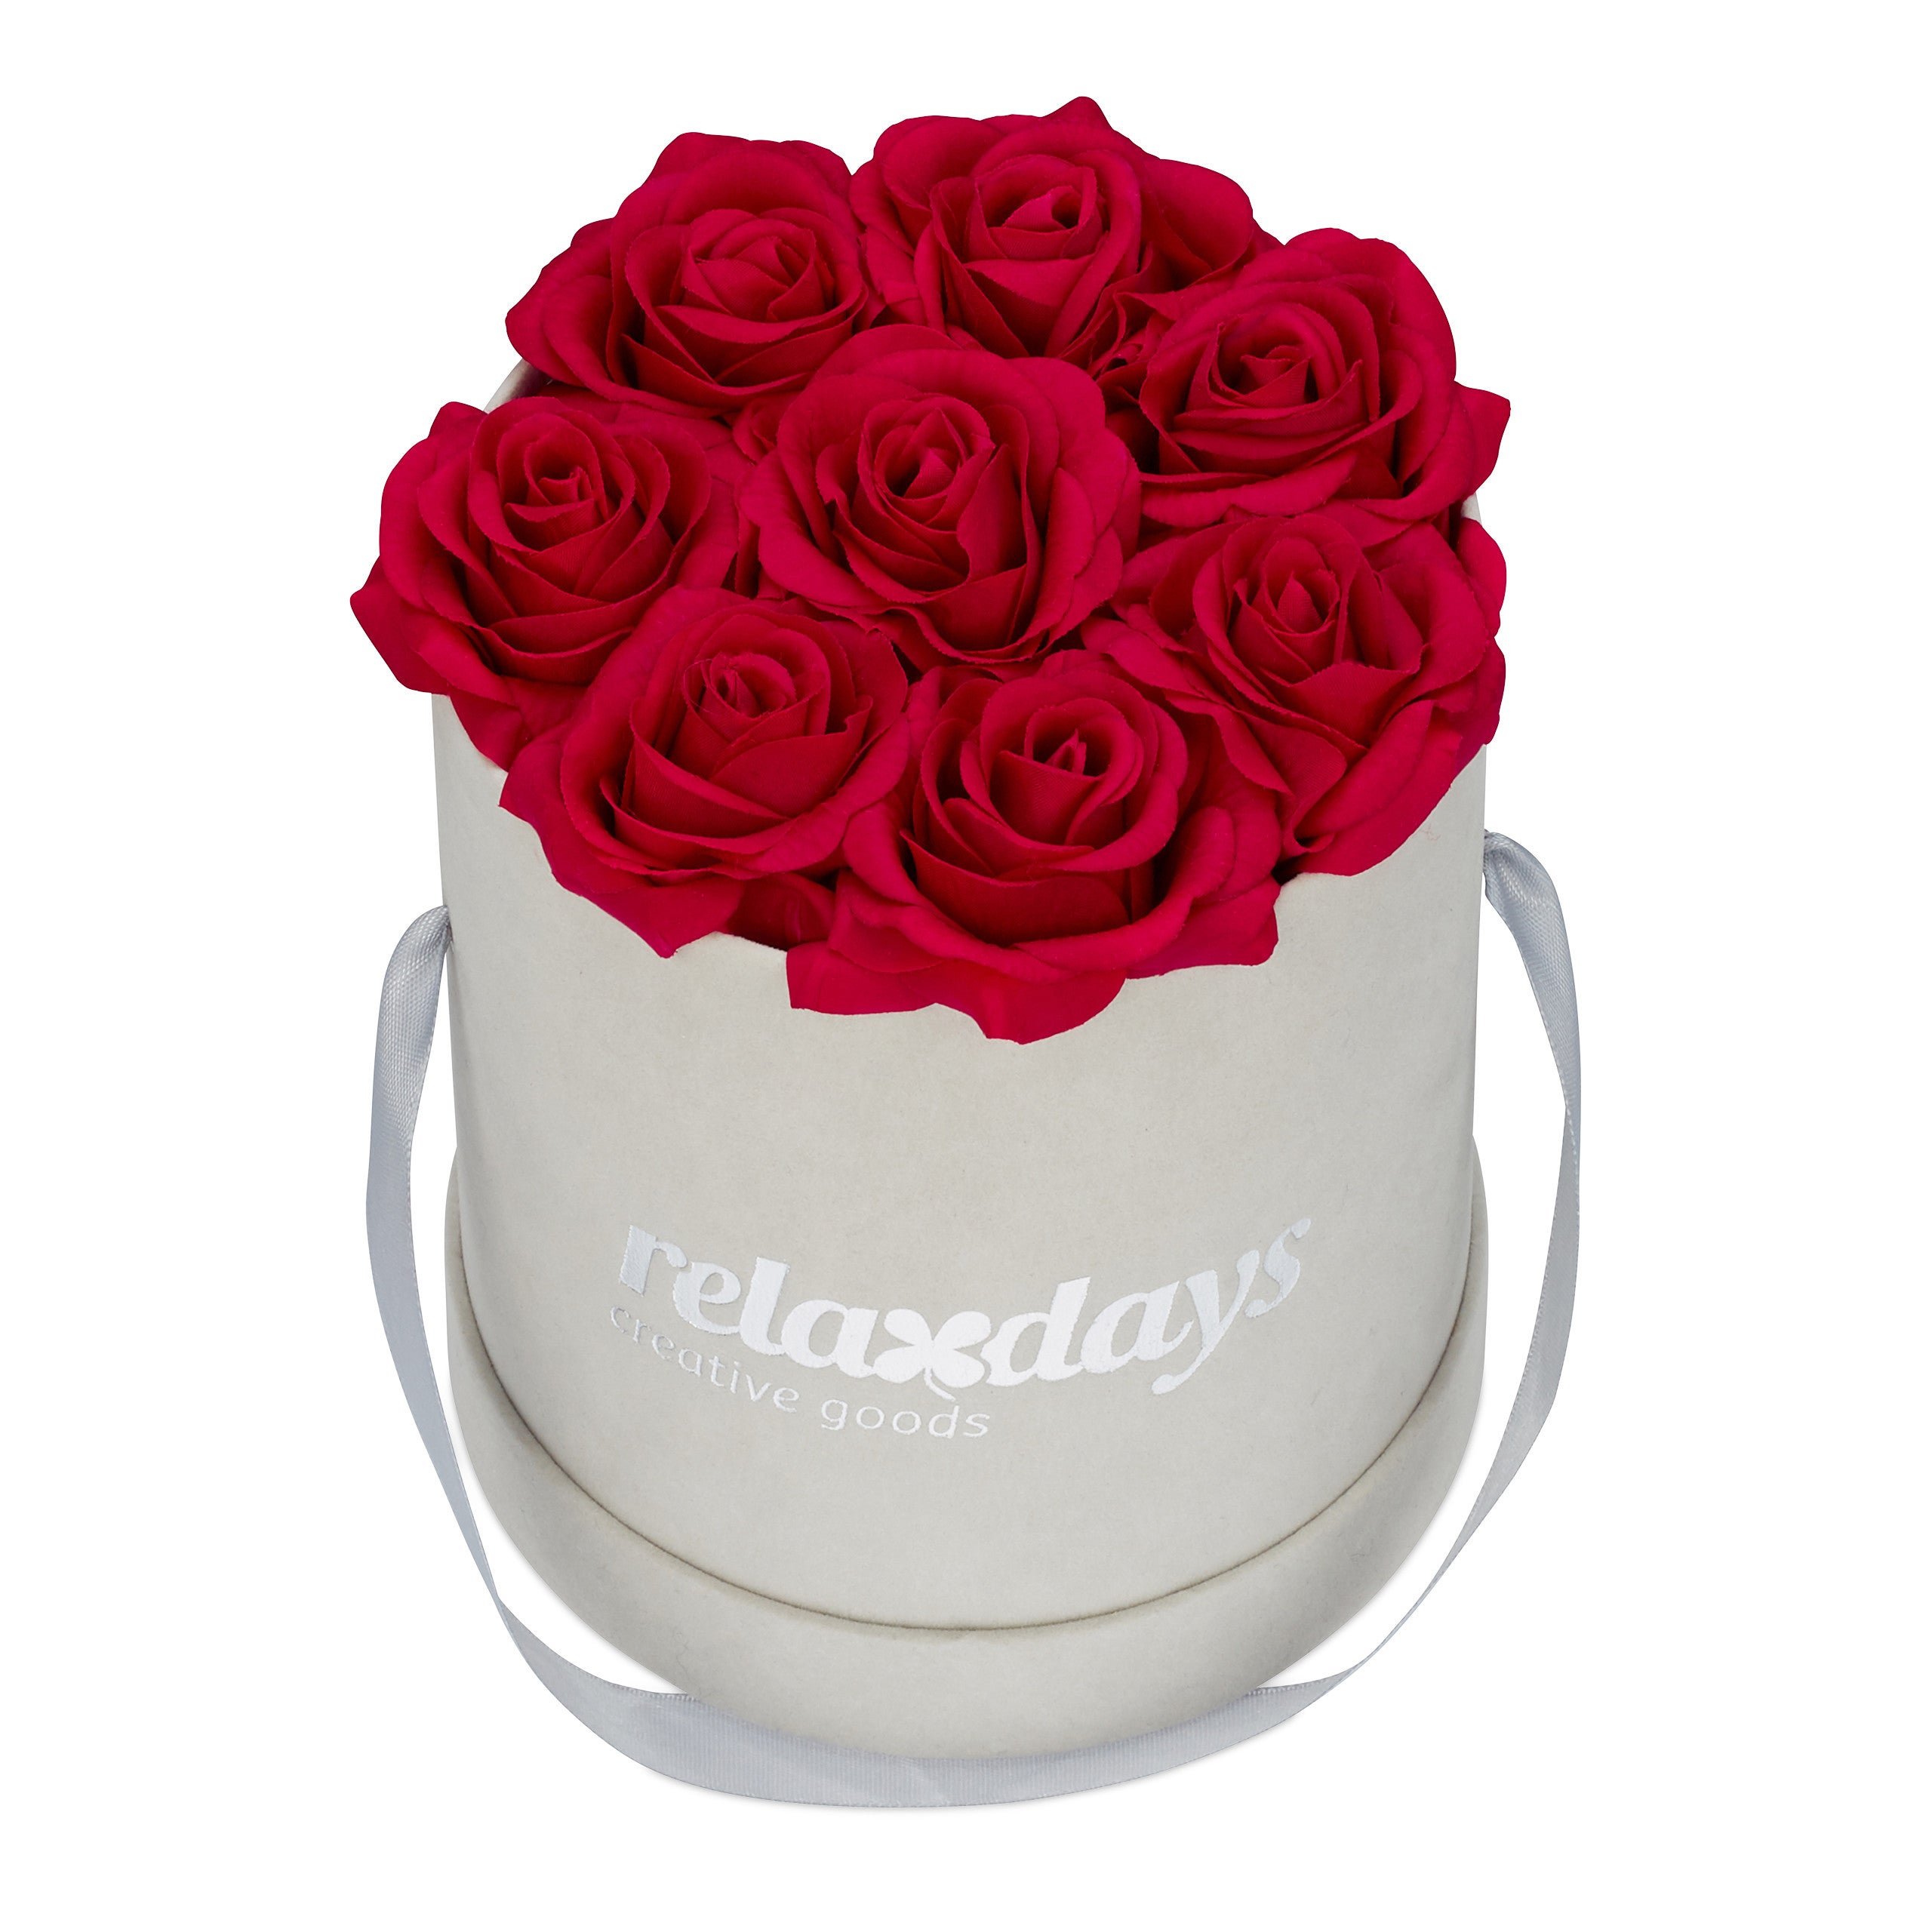 Relaxdays Boîte à roses ronde, 8 roses, Bac à roses noir, conservable 10  ans, Idée cadeau, blanc